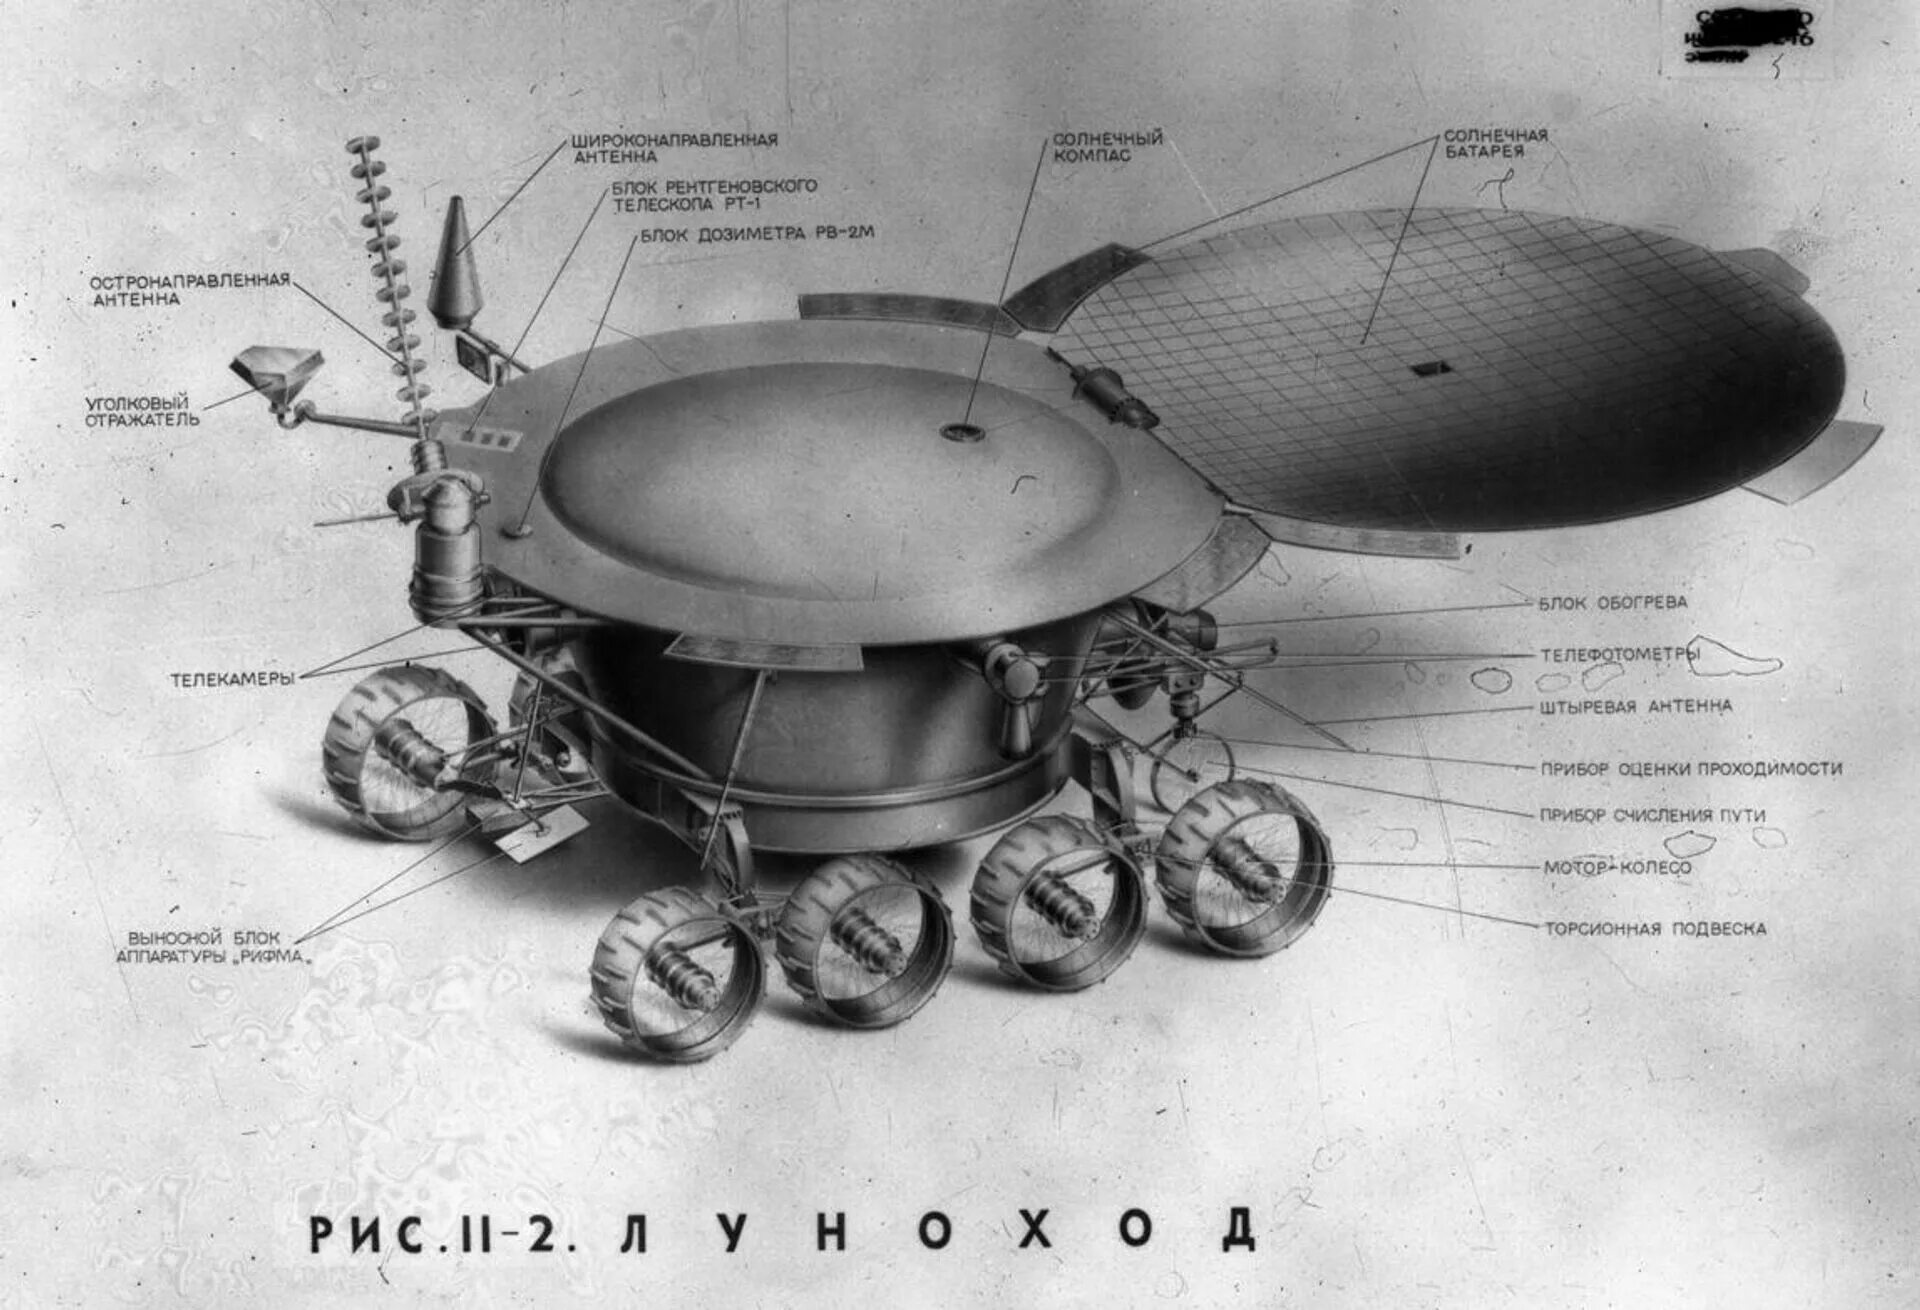 Луна 2 дата выхода в россии. Луноход-1. Первый в мире Планетоход Луноход-1 1970 год. Луноход 1 СССР. Первая в мире автоматическая Лунная станция Луноход 1.